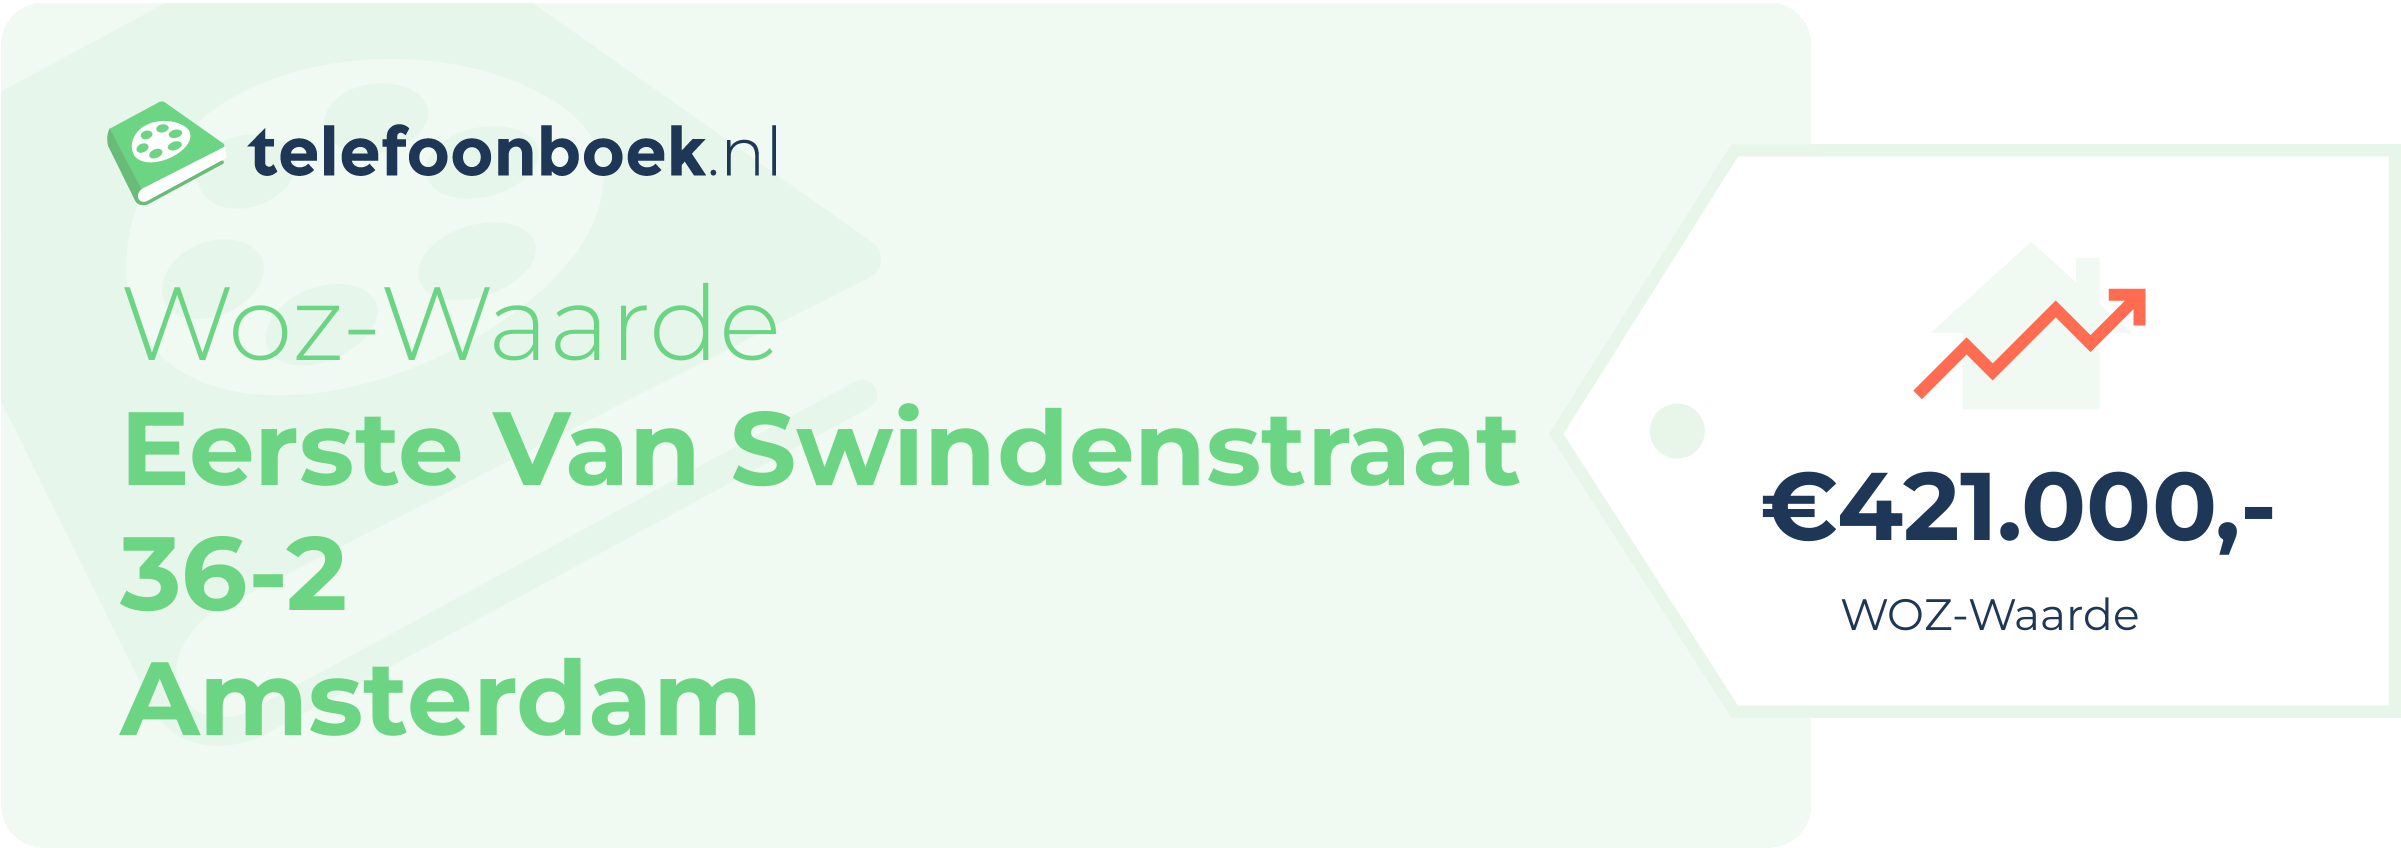 WOZ-waarde Eerste Van Swindenstraat 36-2 Amsterdam